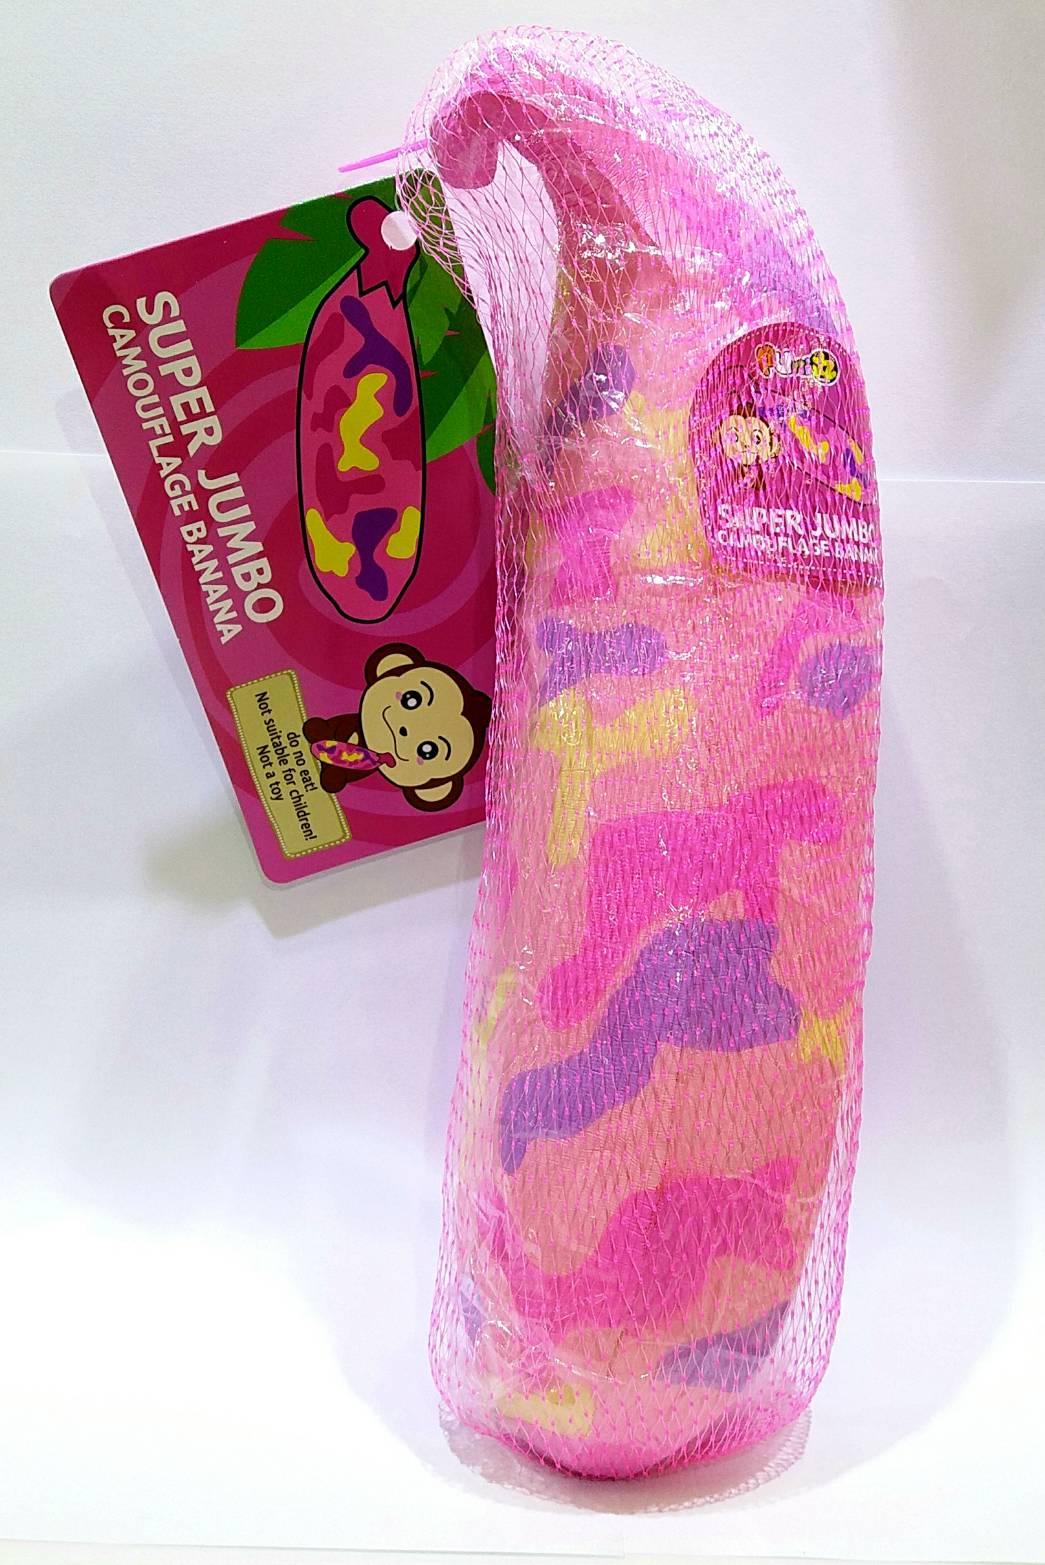 สกุชชี่ กล้วยจัมโบ้ สีชมพู ลายพราง Puni Maru Jumbo Cheeki Banana Squishy, Pink Camouflage